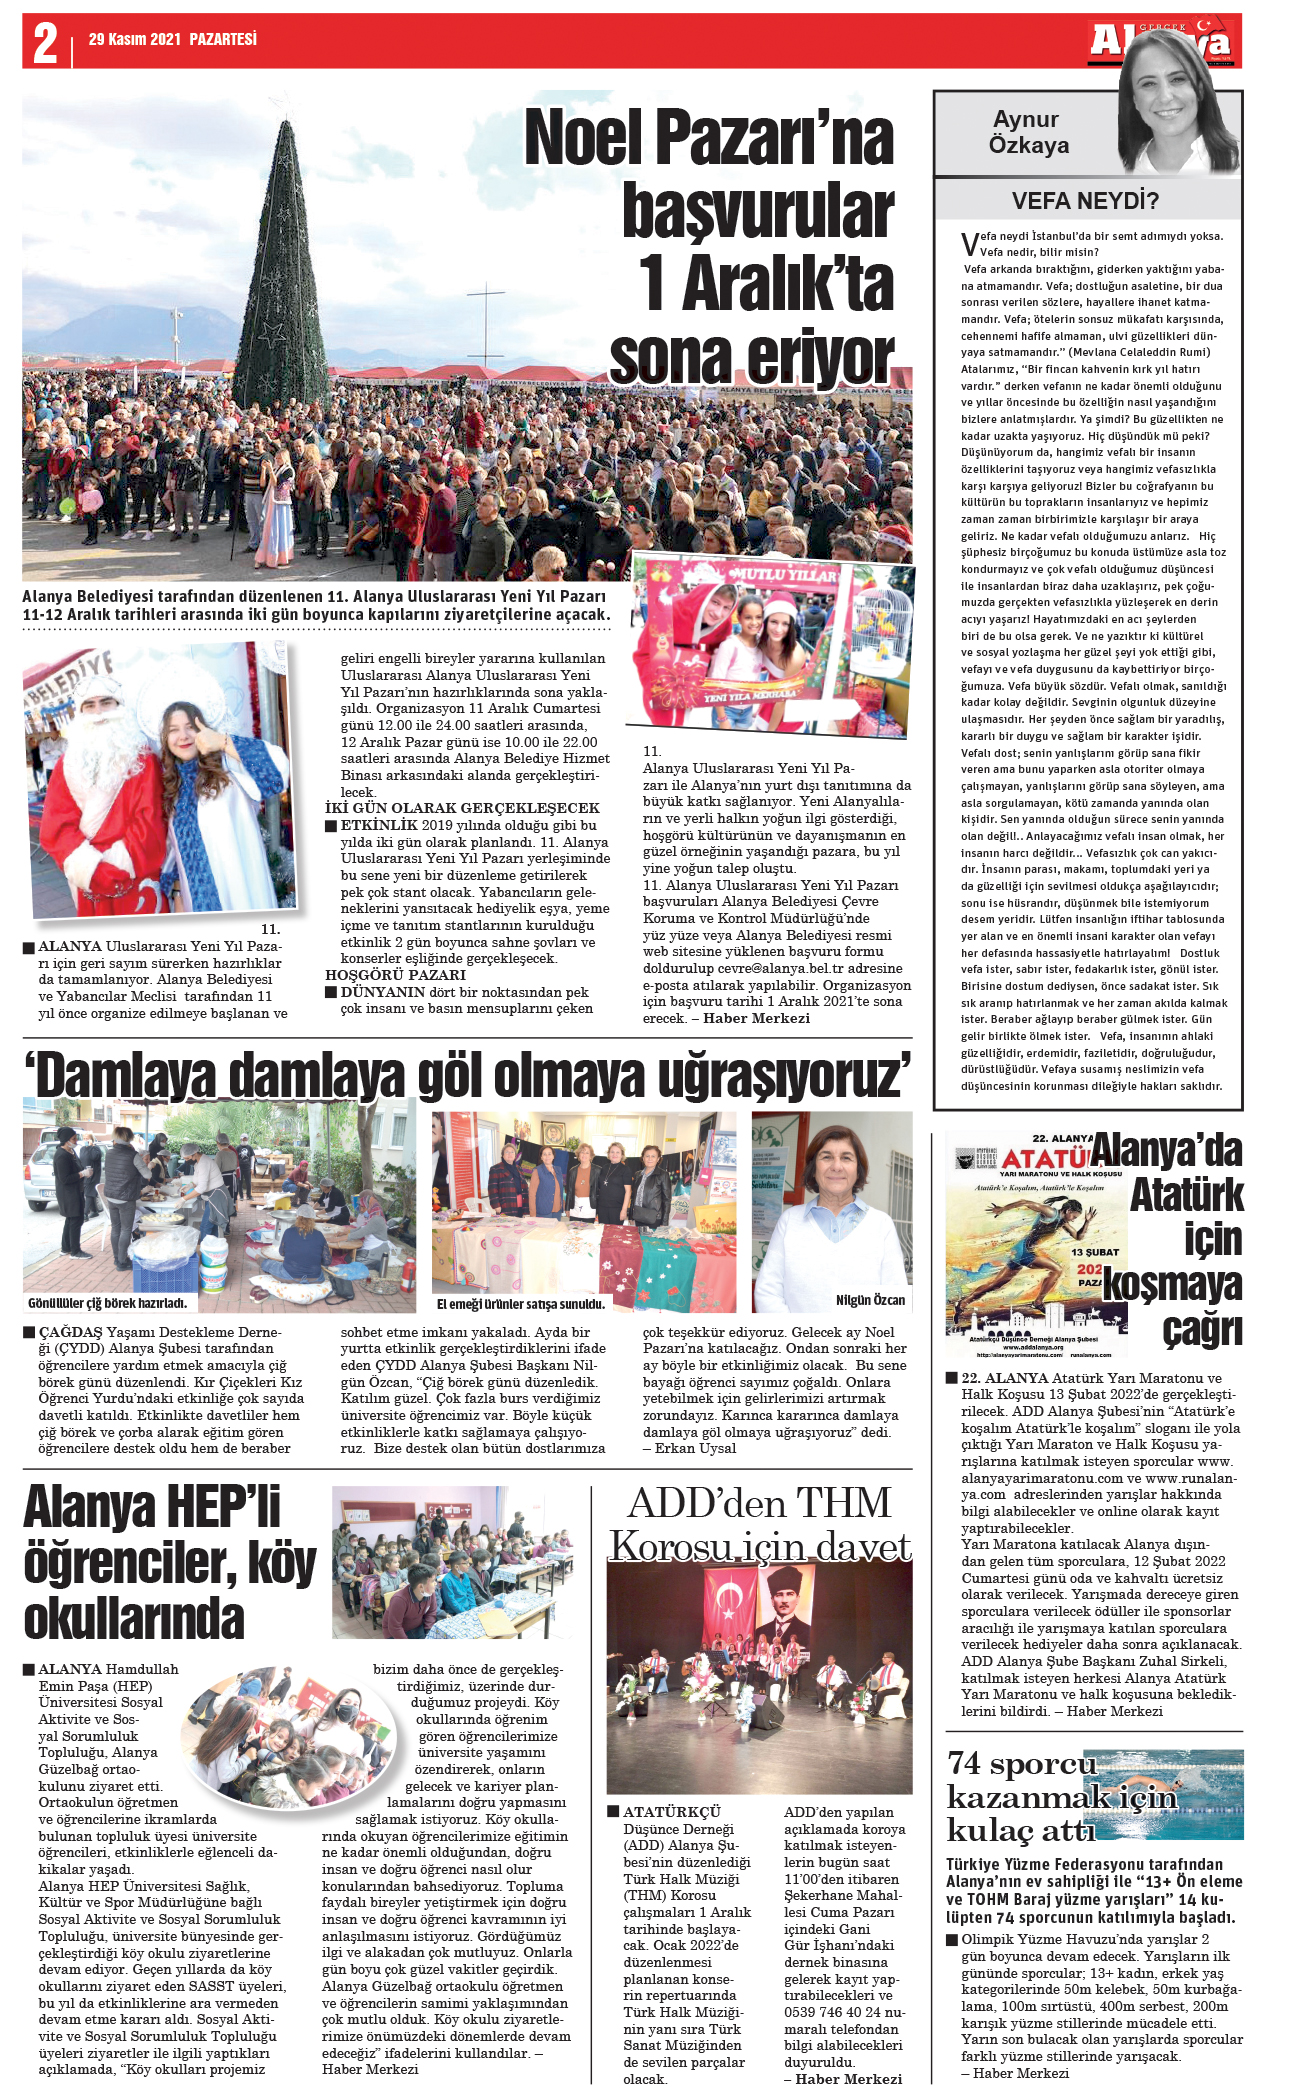 Gerçek Alanya Gazetesi - 29.11.2021 Manşeti